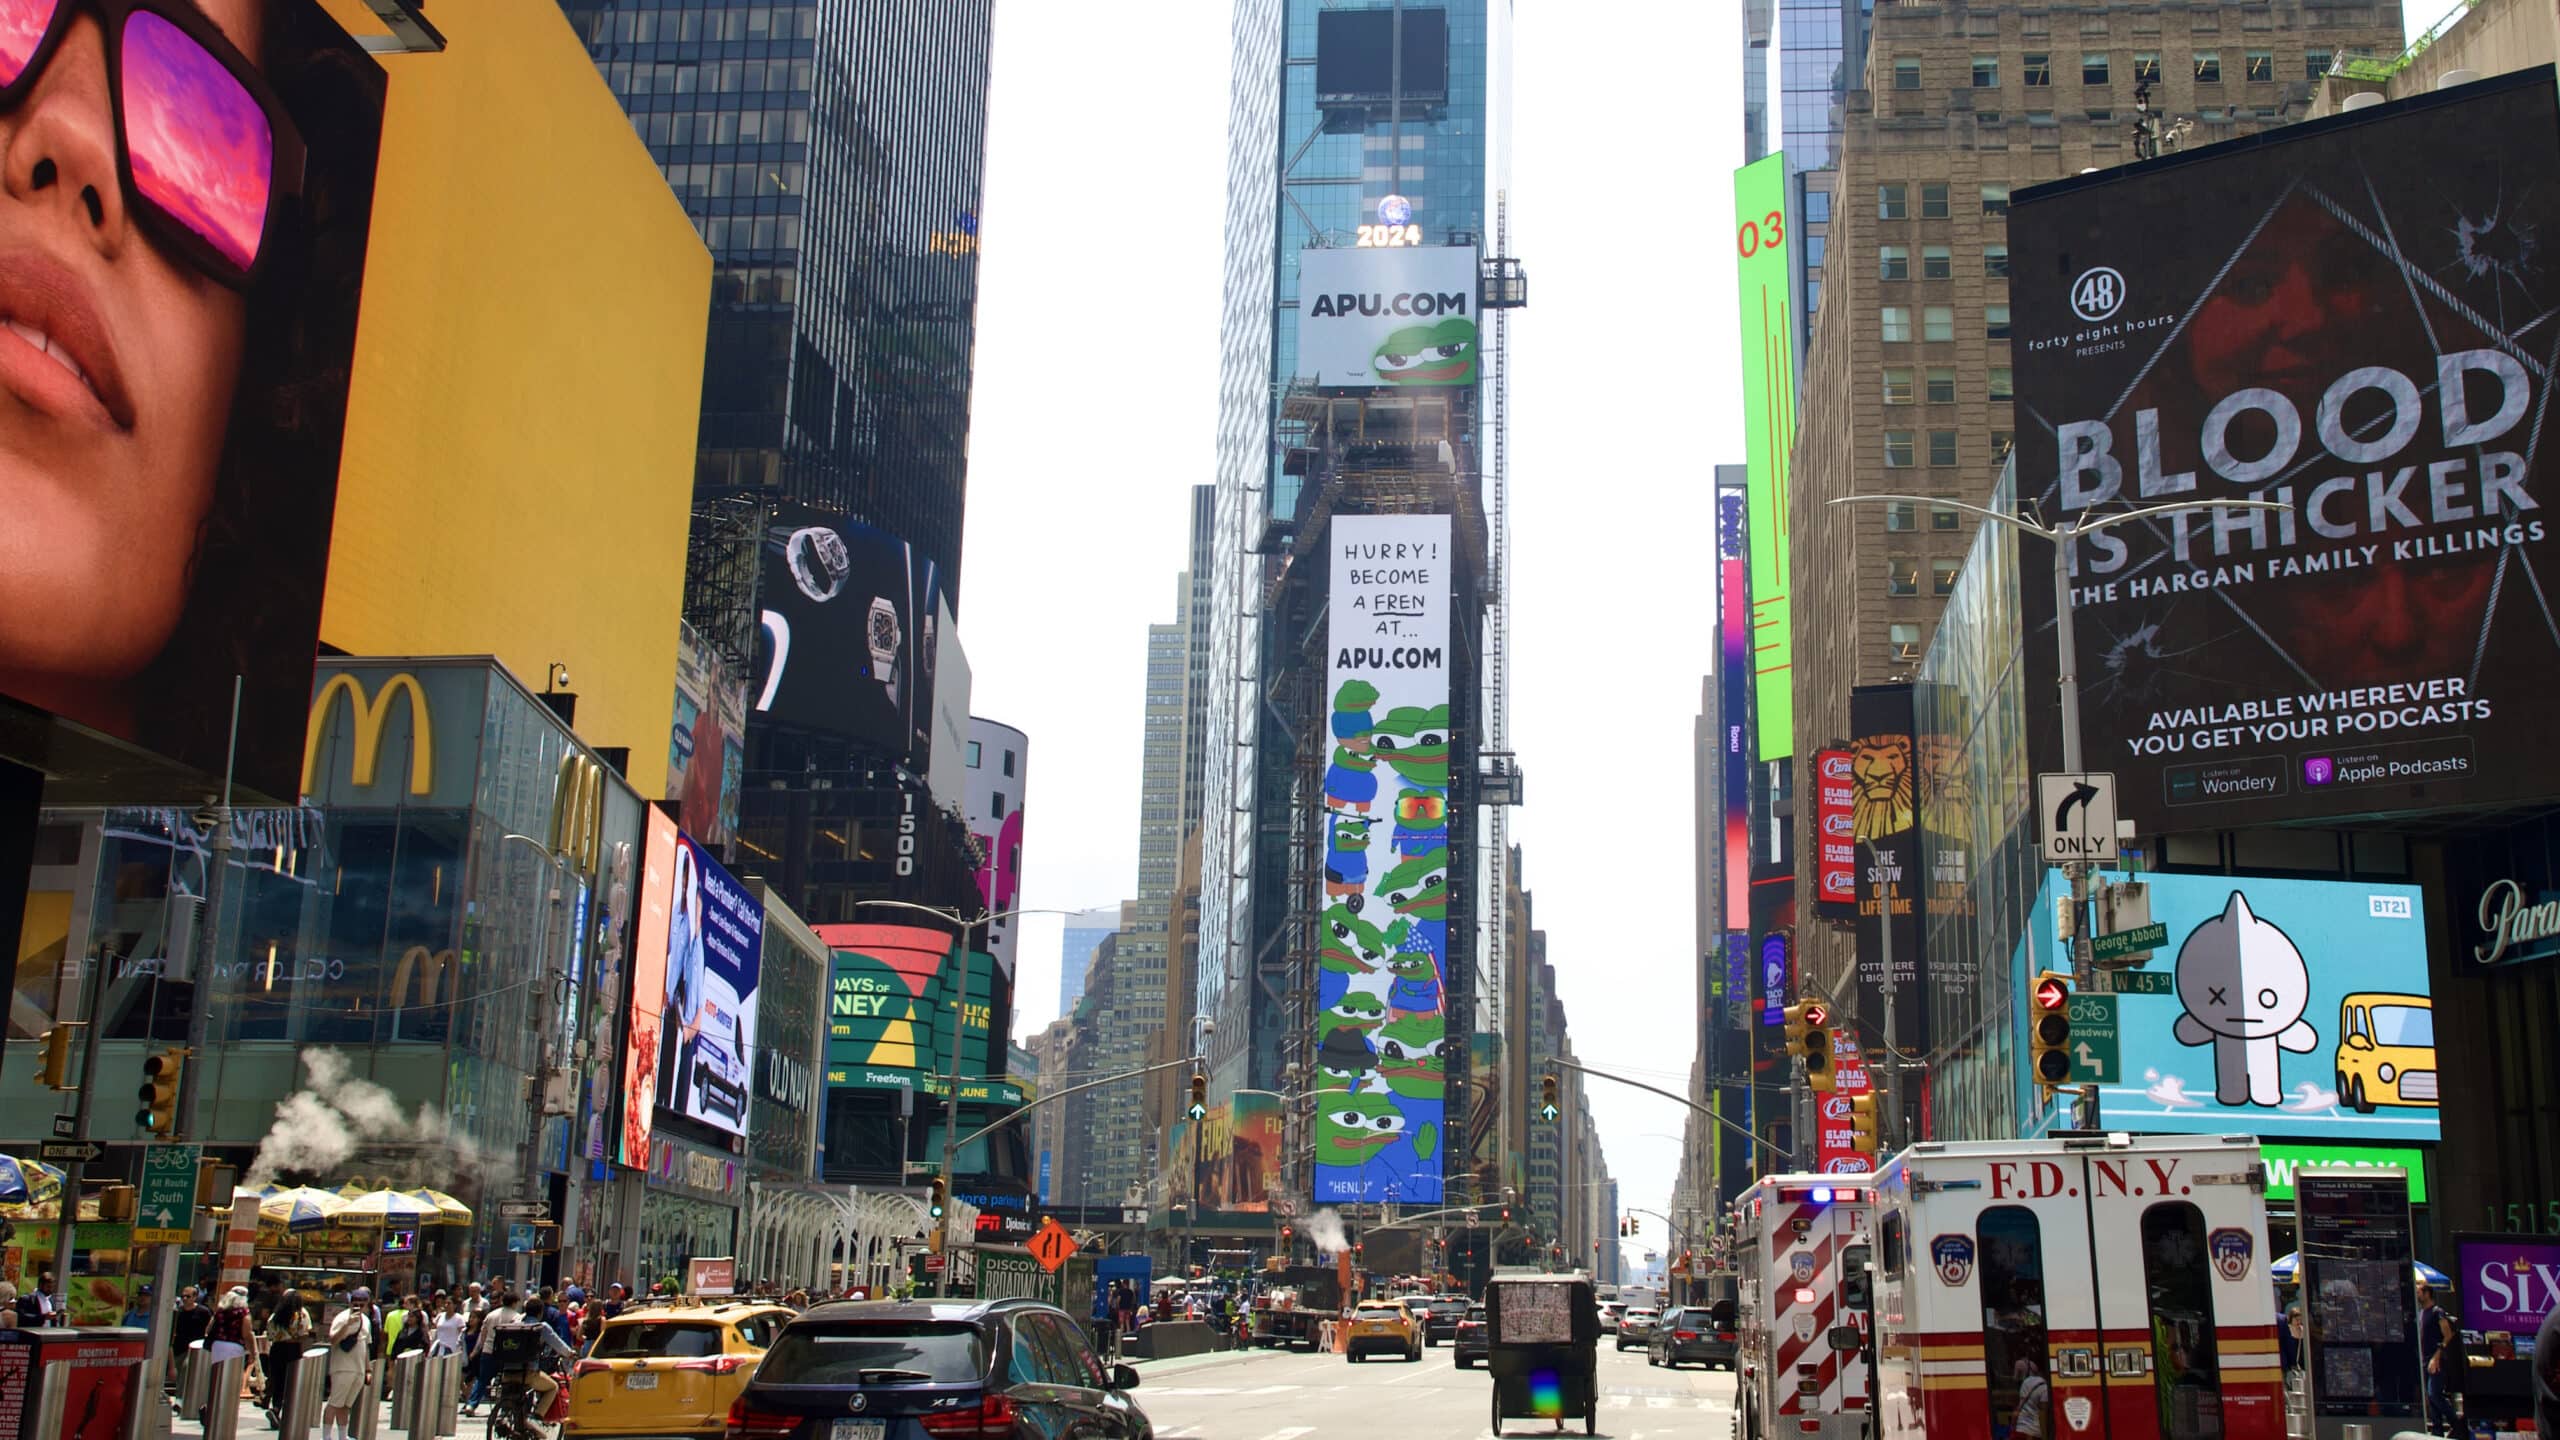 APU 1TSQ 1 Times Square NY NYC Digital Billboard Manhattan USA